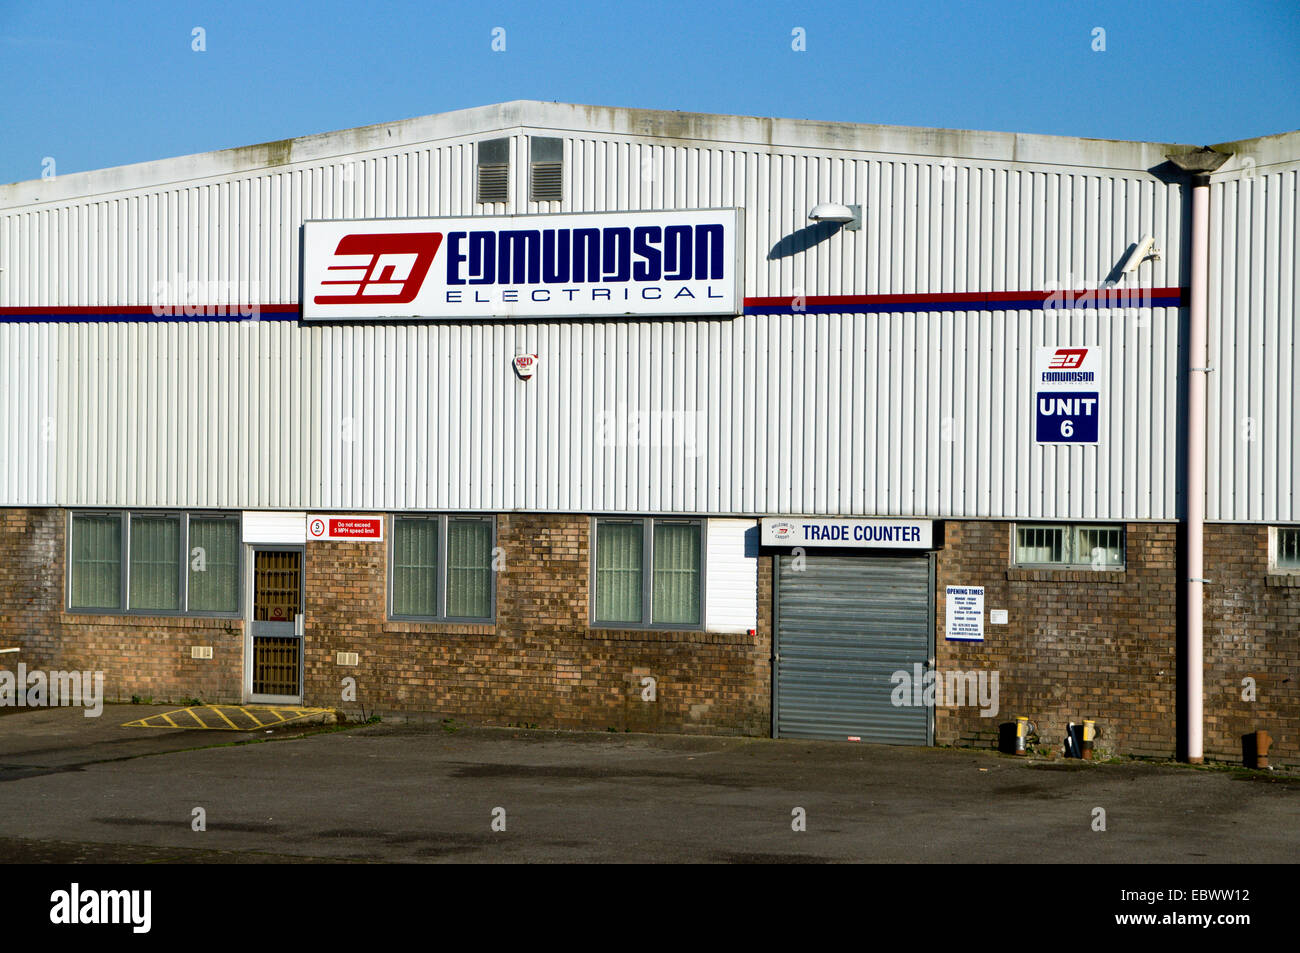 Edmundson Electrical Wholesalers, Cardiff, Wales. Stock Photo